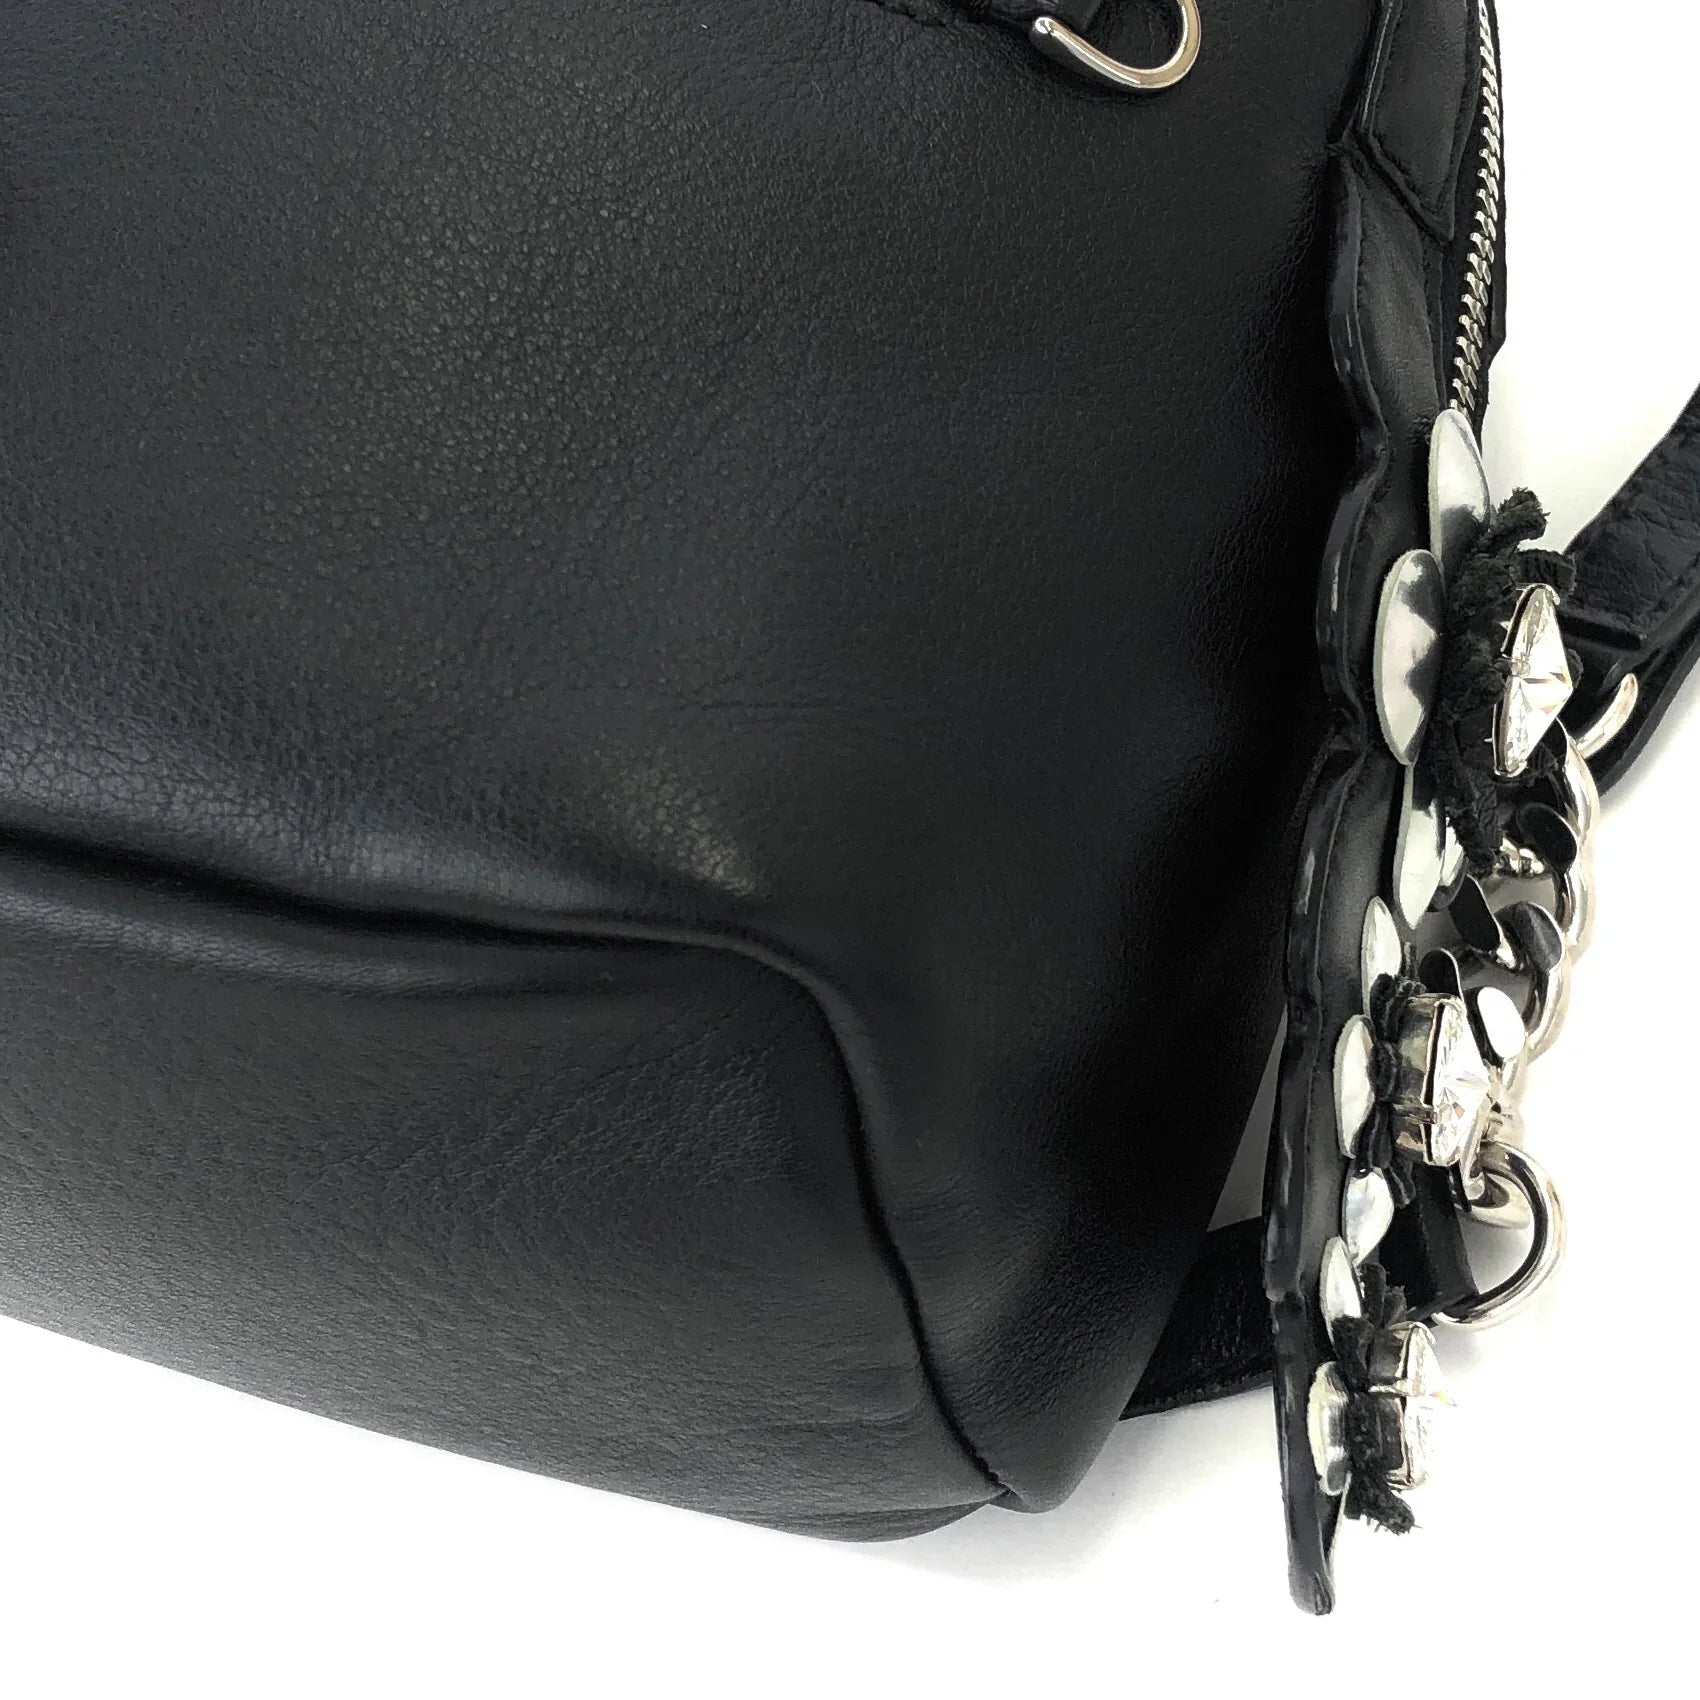 Buy Black Sling Hand Bag Online at Best Price at Global Desi- 8905134468509